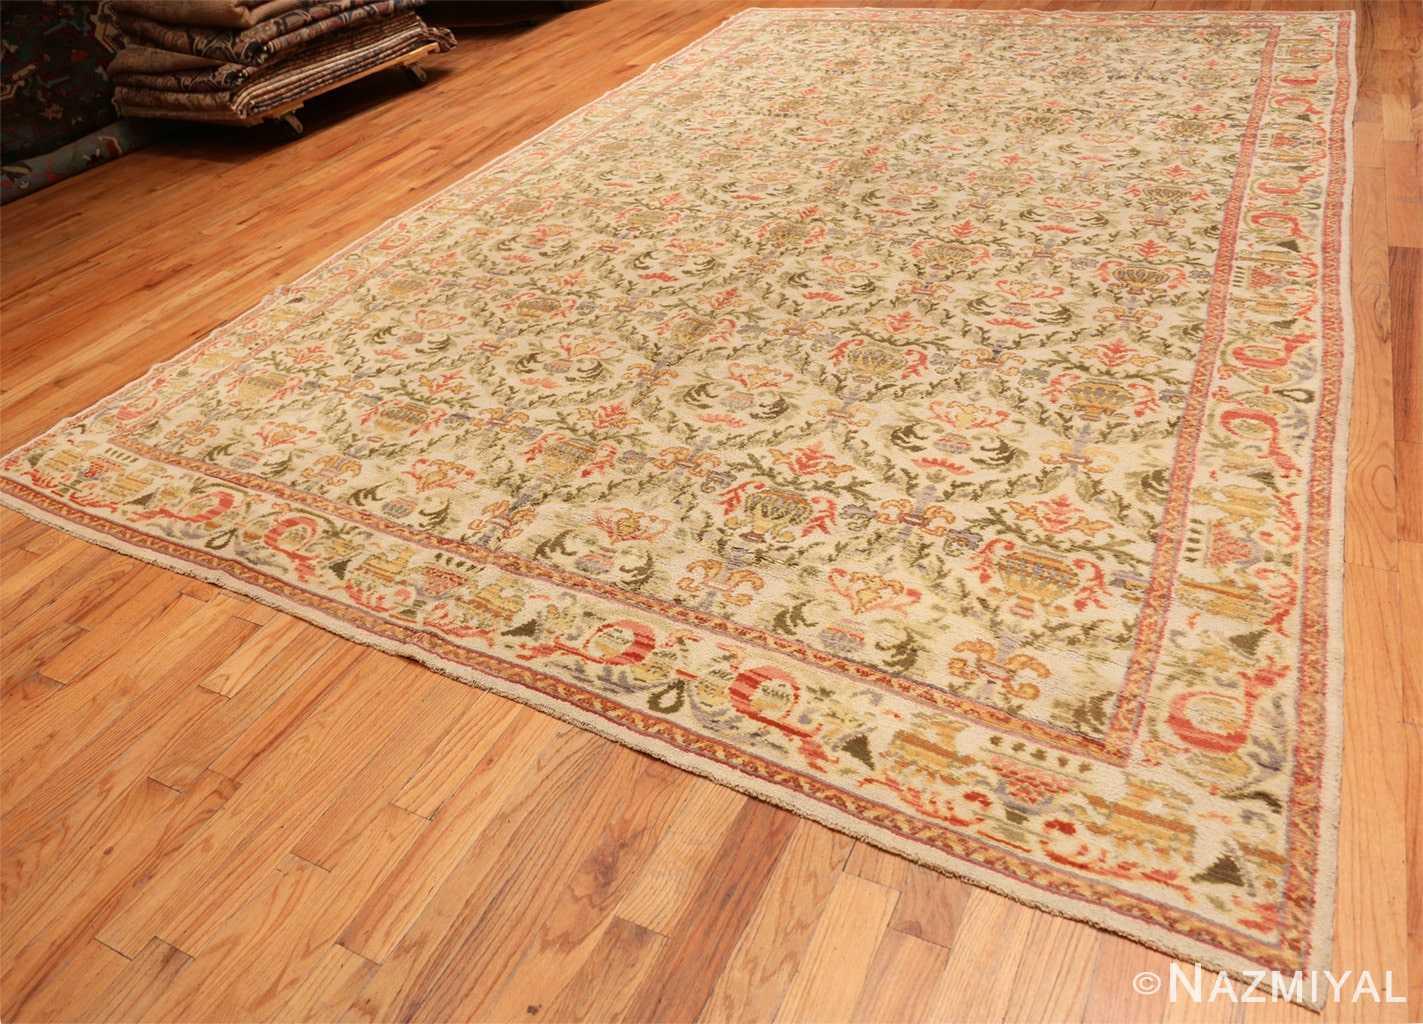 Full Decorative Large Antique Spanish rug 50581 by Nazmiyal